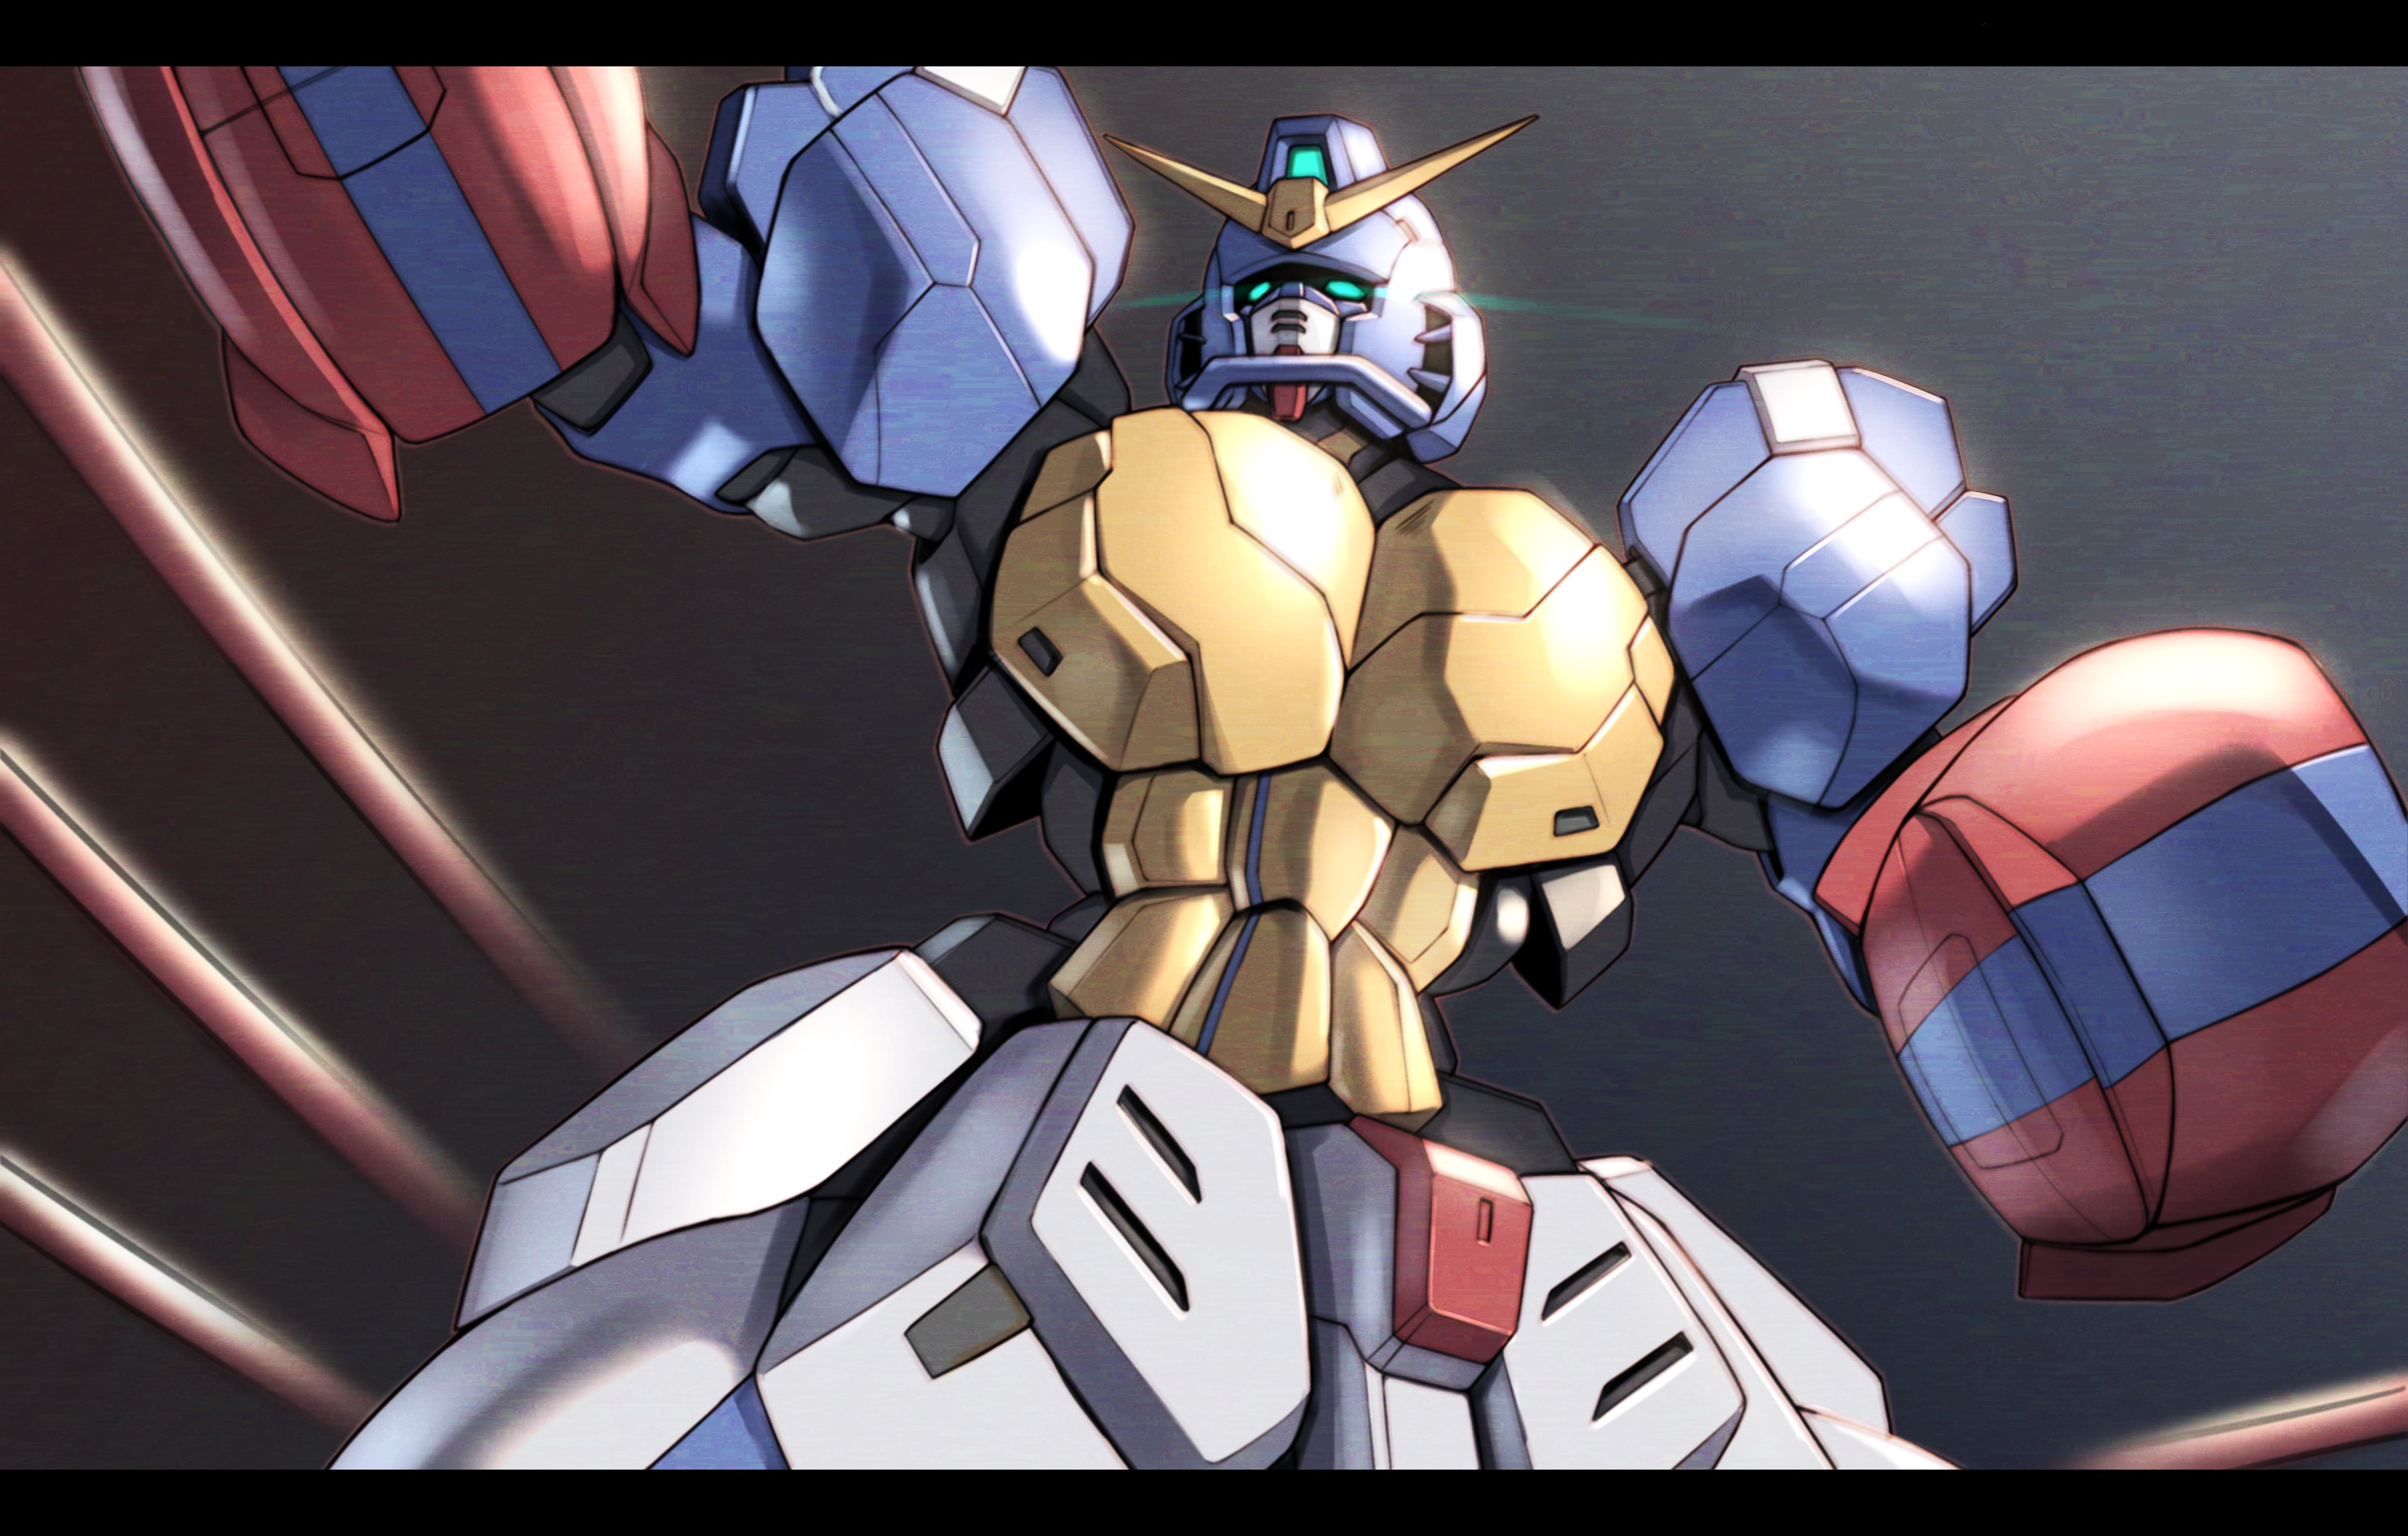 Anime 3700x2360 Gundam Maxter anime mechs Super Robot Taisen Mobile Fighter G Gundam Gundam artwork digital art fan art